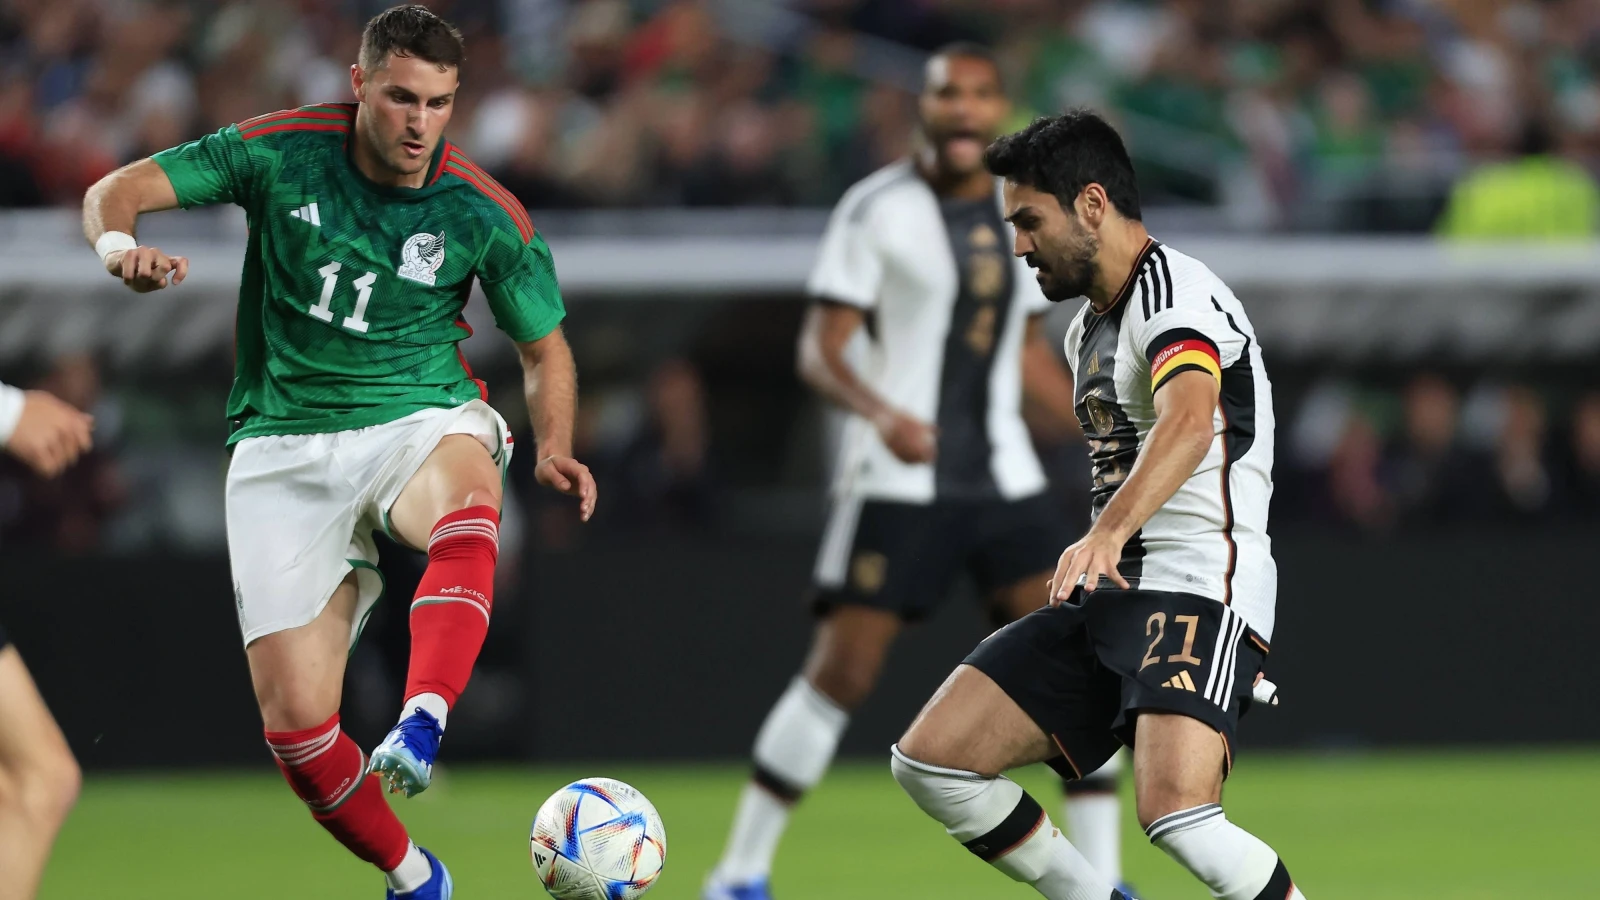 Interlandperiode | Basisspeler Gimenez speelt gelijk tegen Duitsland, geschorste Lopez ziet Peru verliezen